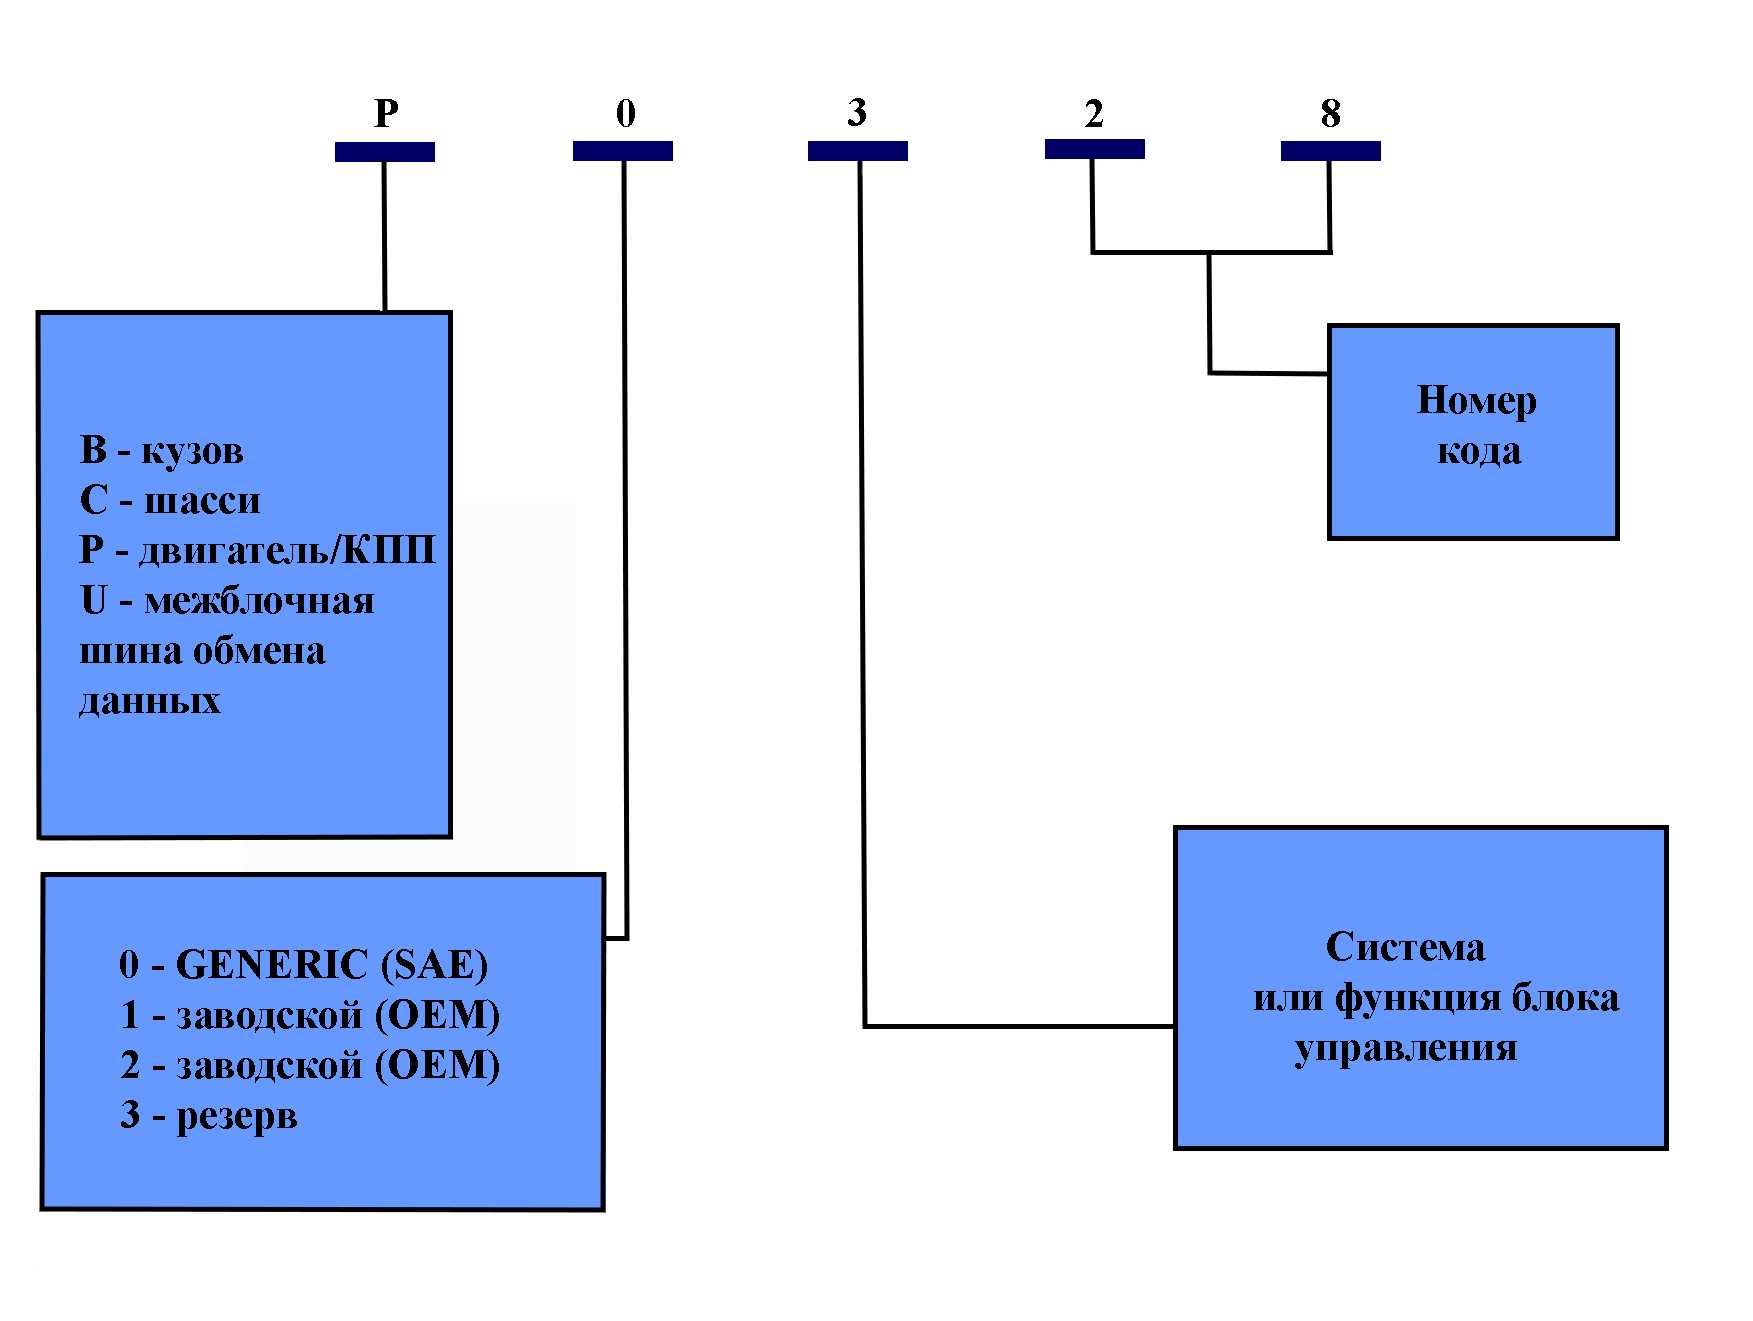 P0053 датчик сопротивления нагревателя датчика кислорода (ho2s), ряд 1, датчик 1 - описание, симптомы, причины ошибки